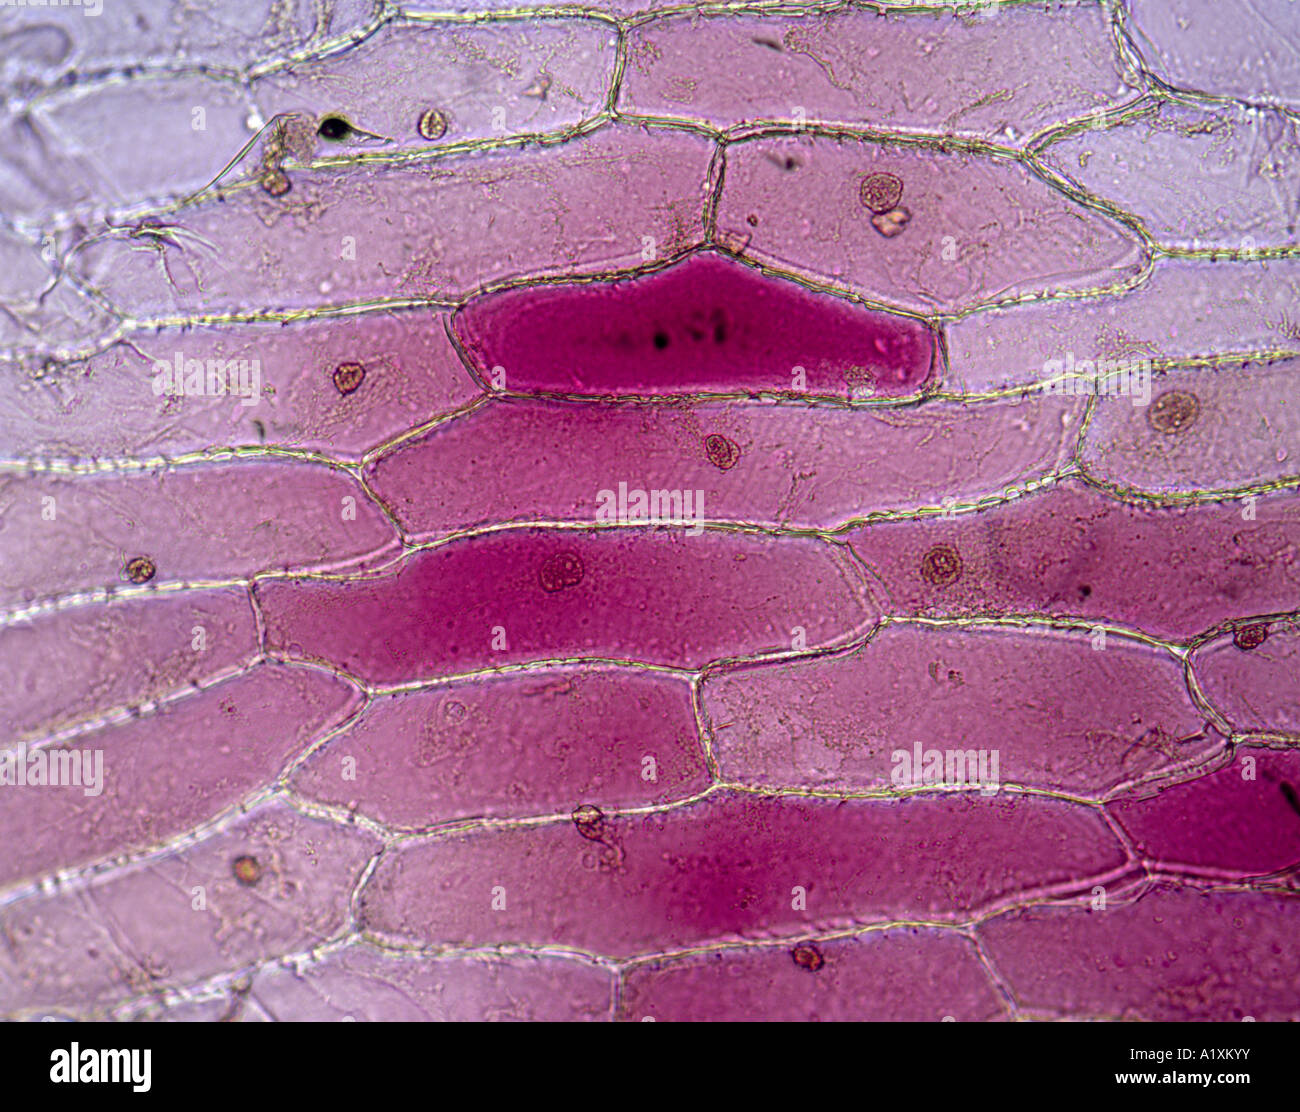 La cebolla roja; las células epidérmicas mostrando el citoplasma y núcleos; el color rojo es natural, no mancha / 100X STUDIO Foto de stock